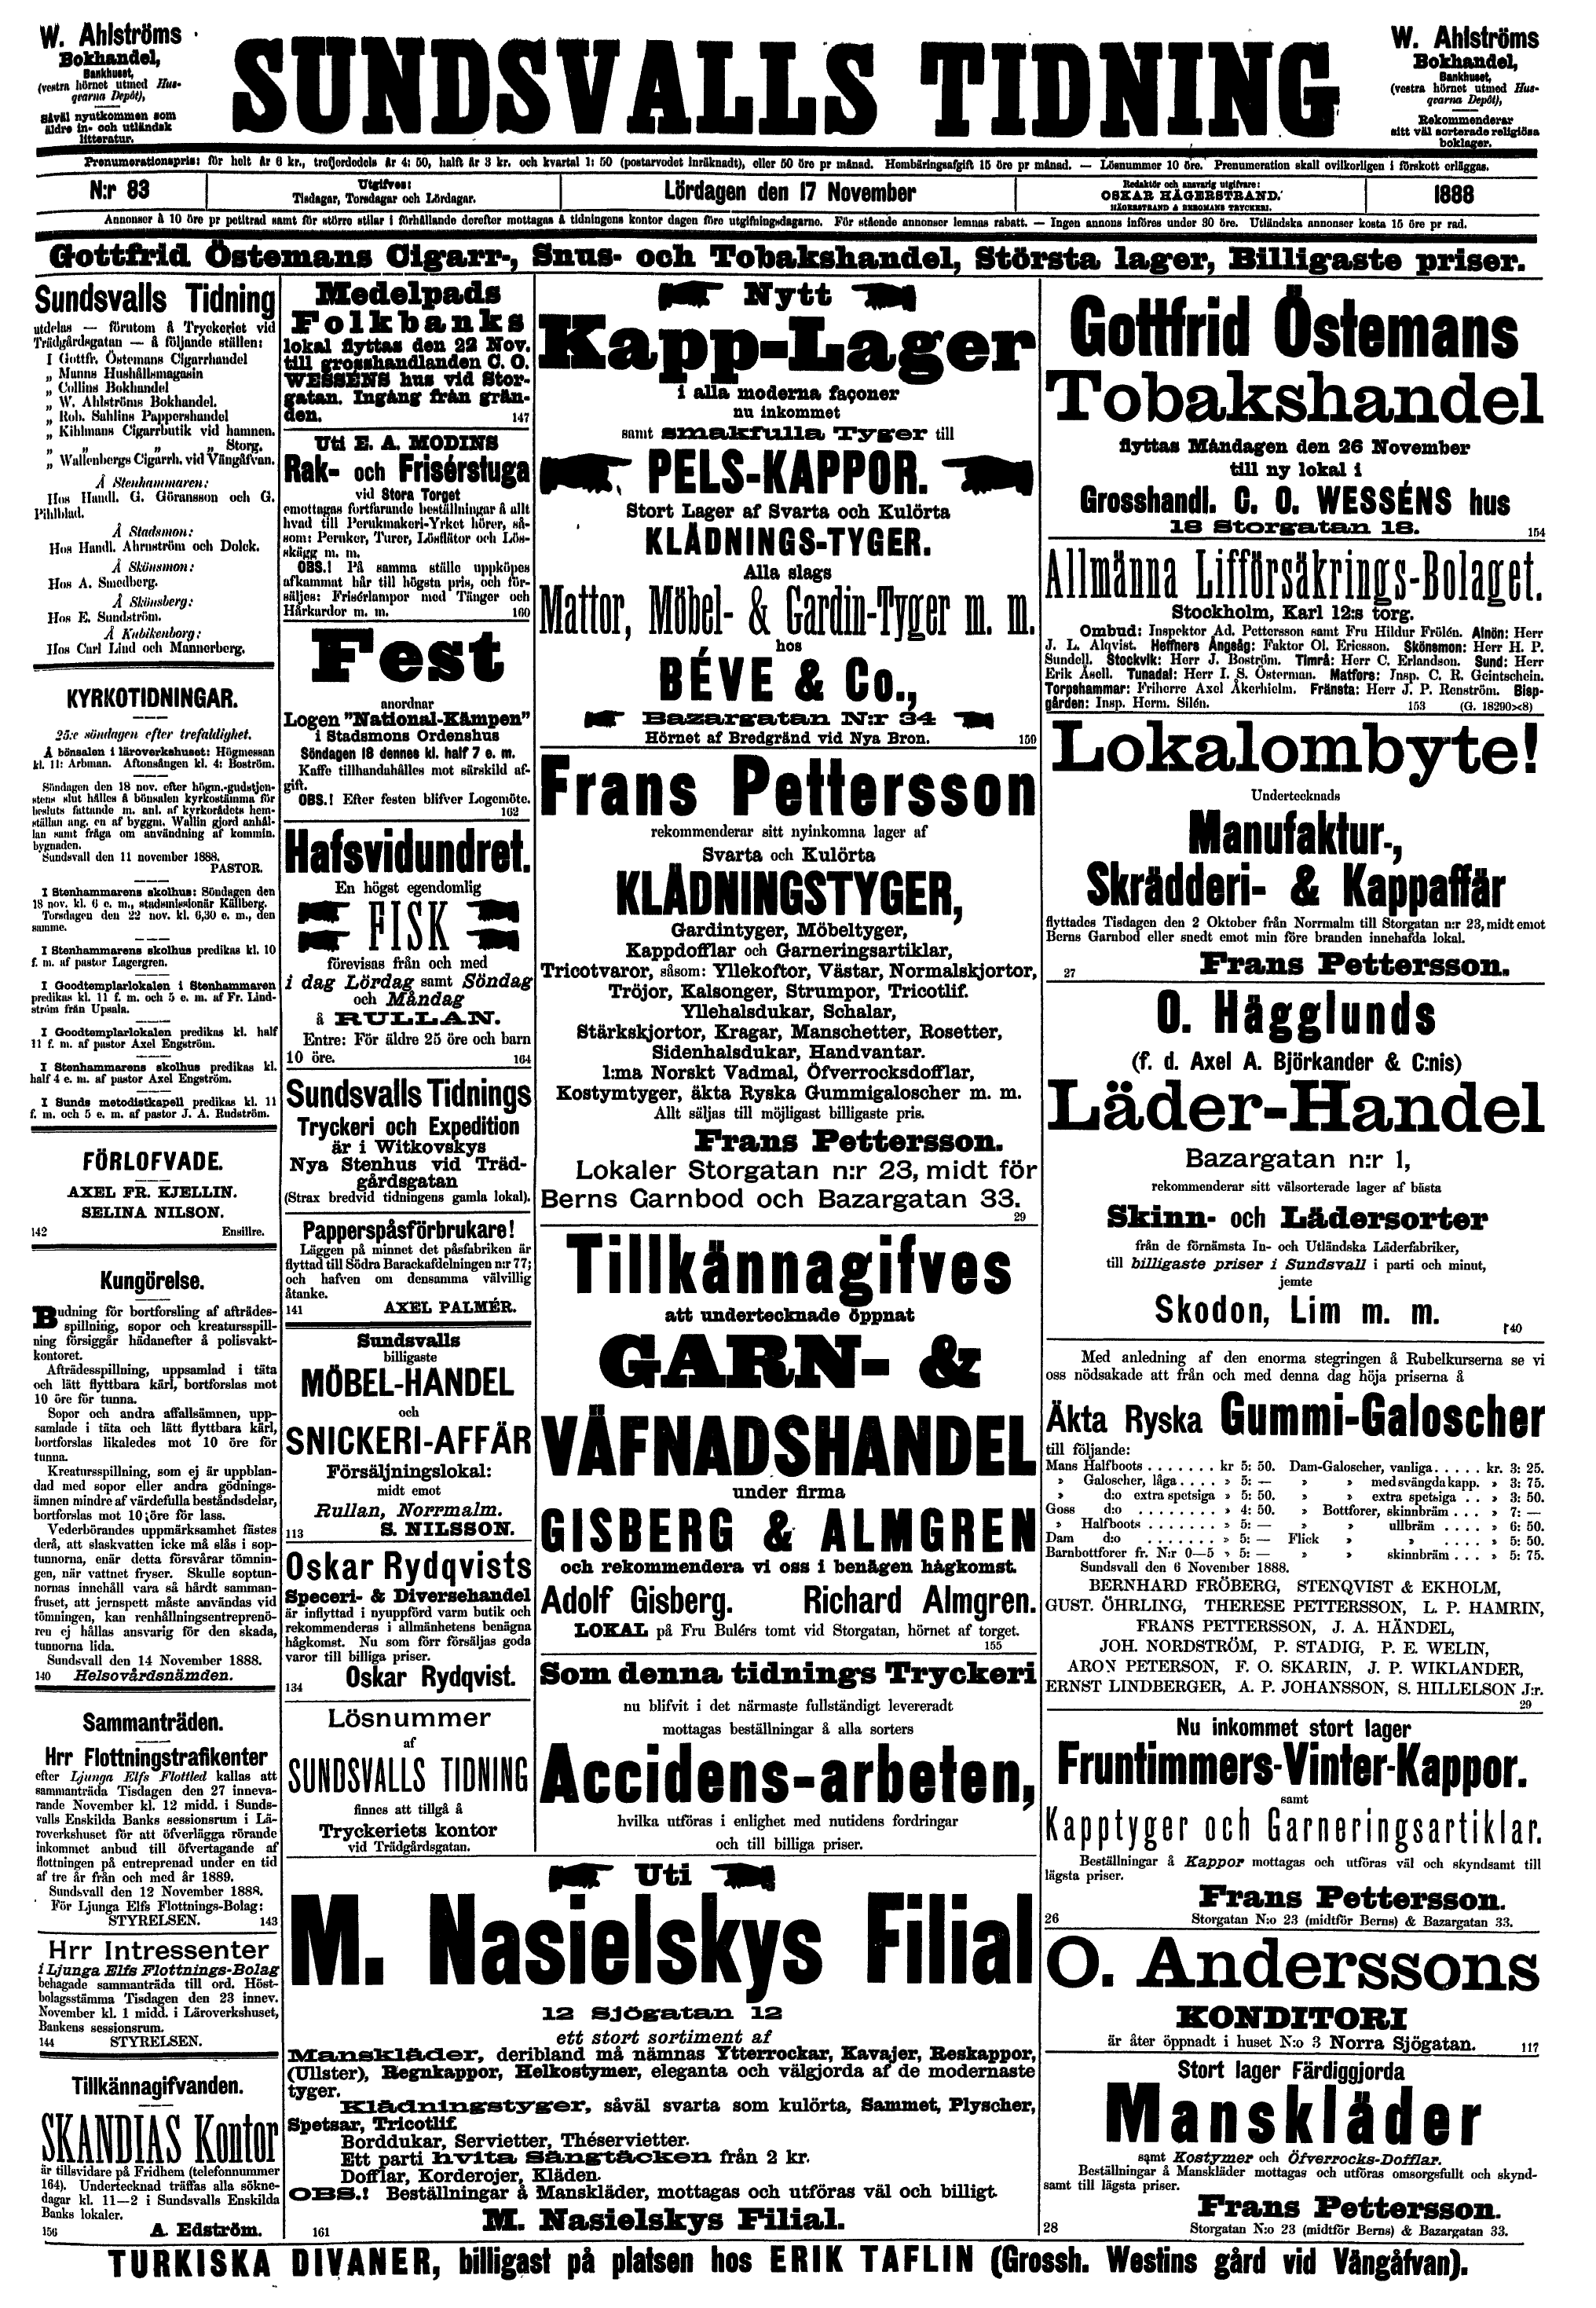 314 (Sundsvalls Tidning / Årgång 1888)